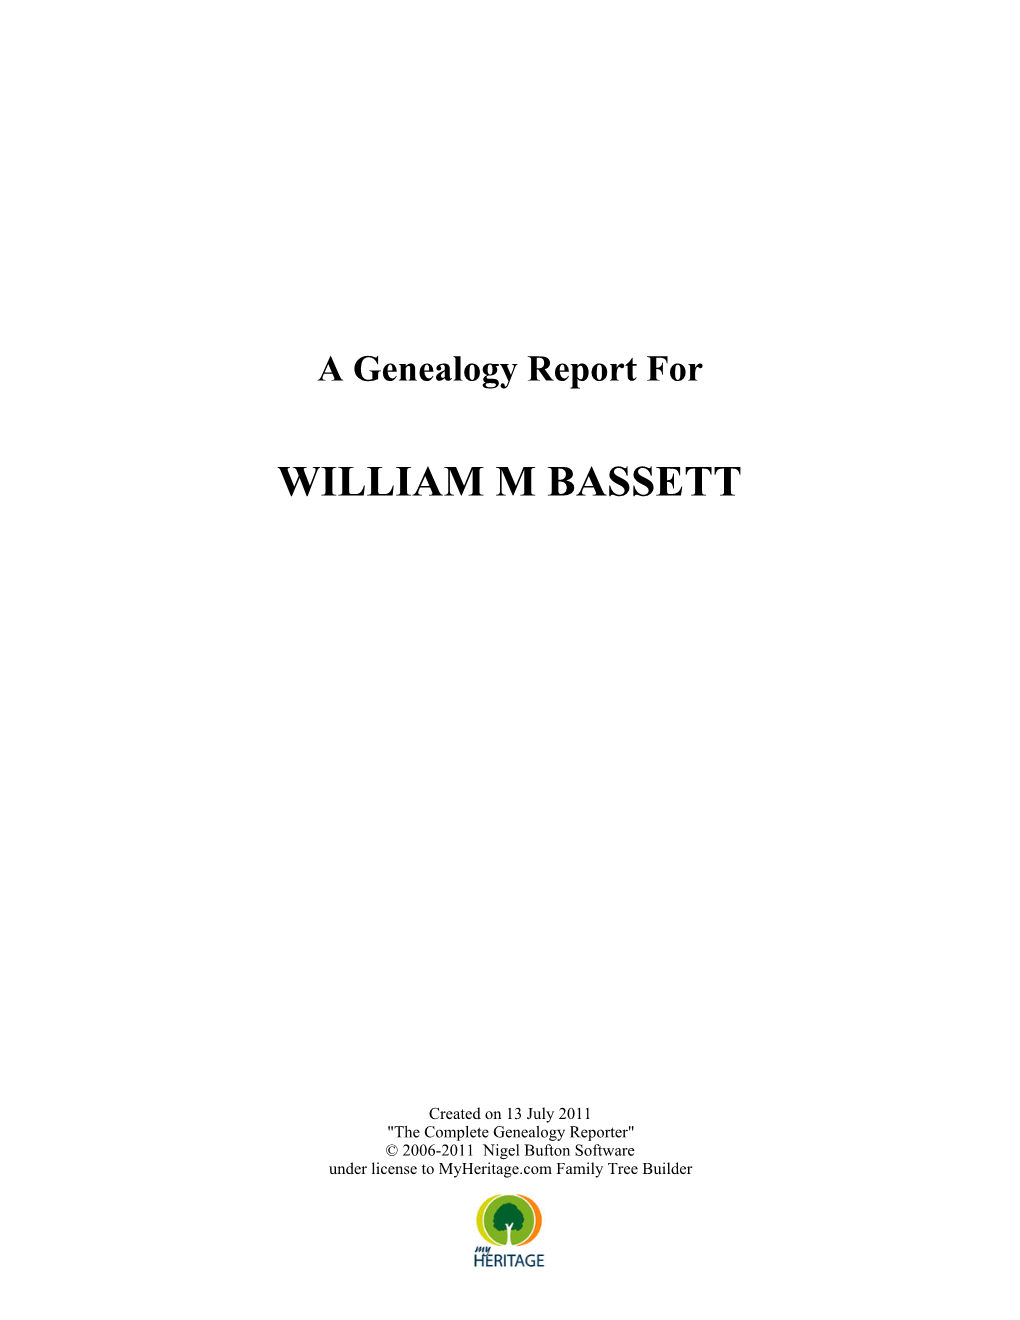 William M Bassett